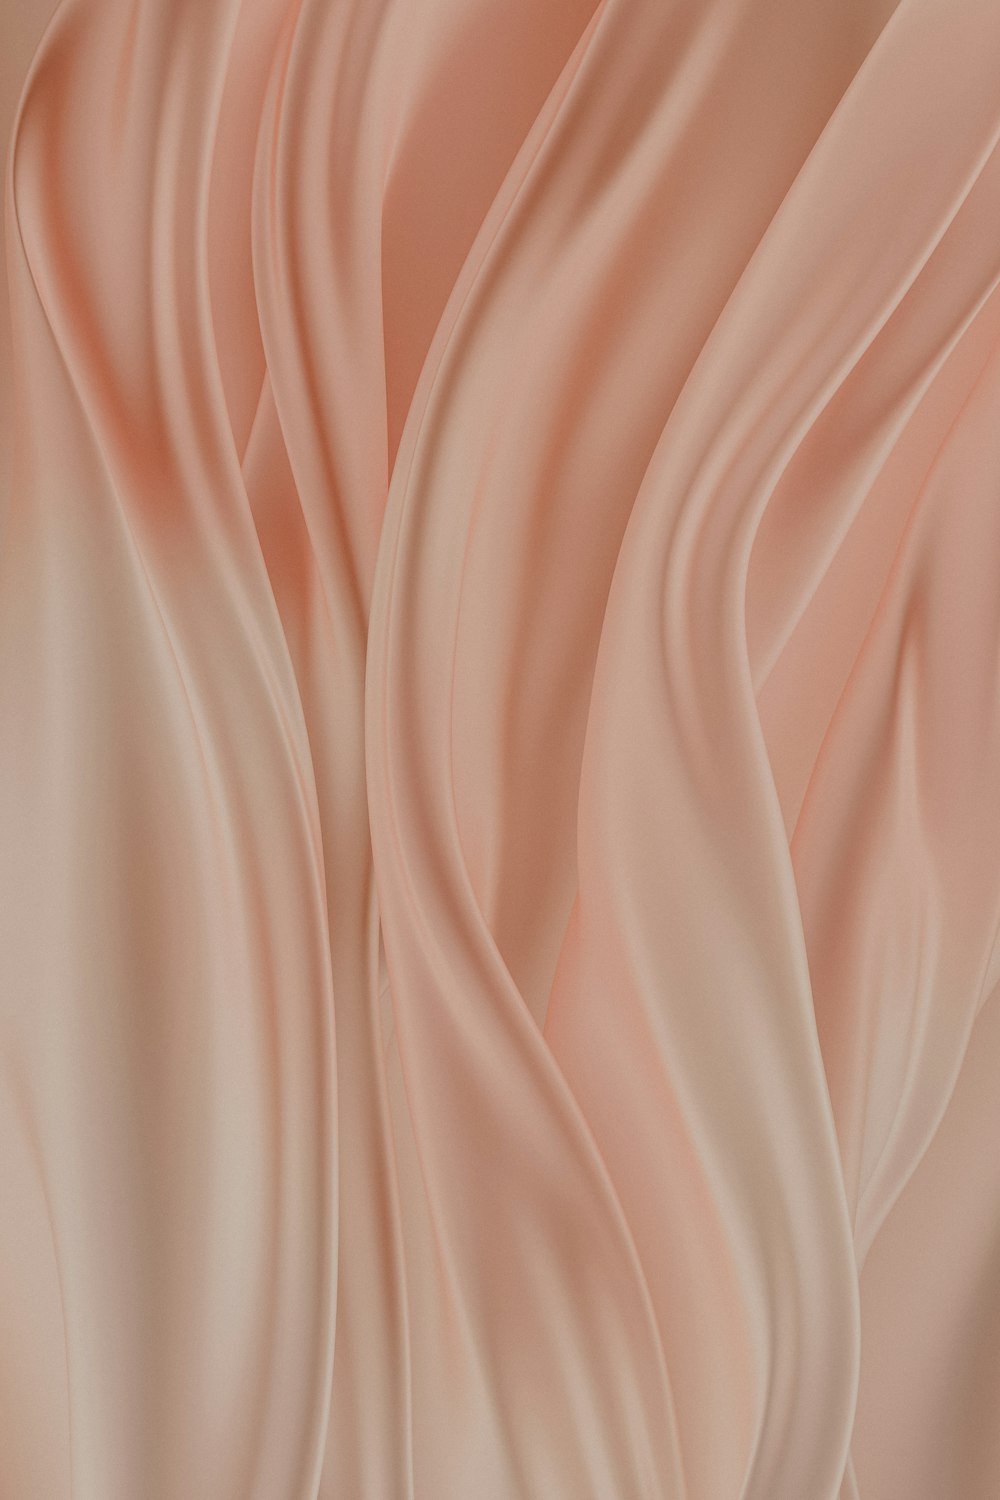 ein weicher rosa Hintergrund mit wellenförmigen Falten